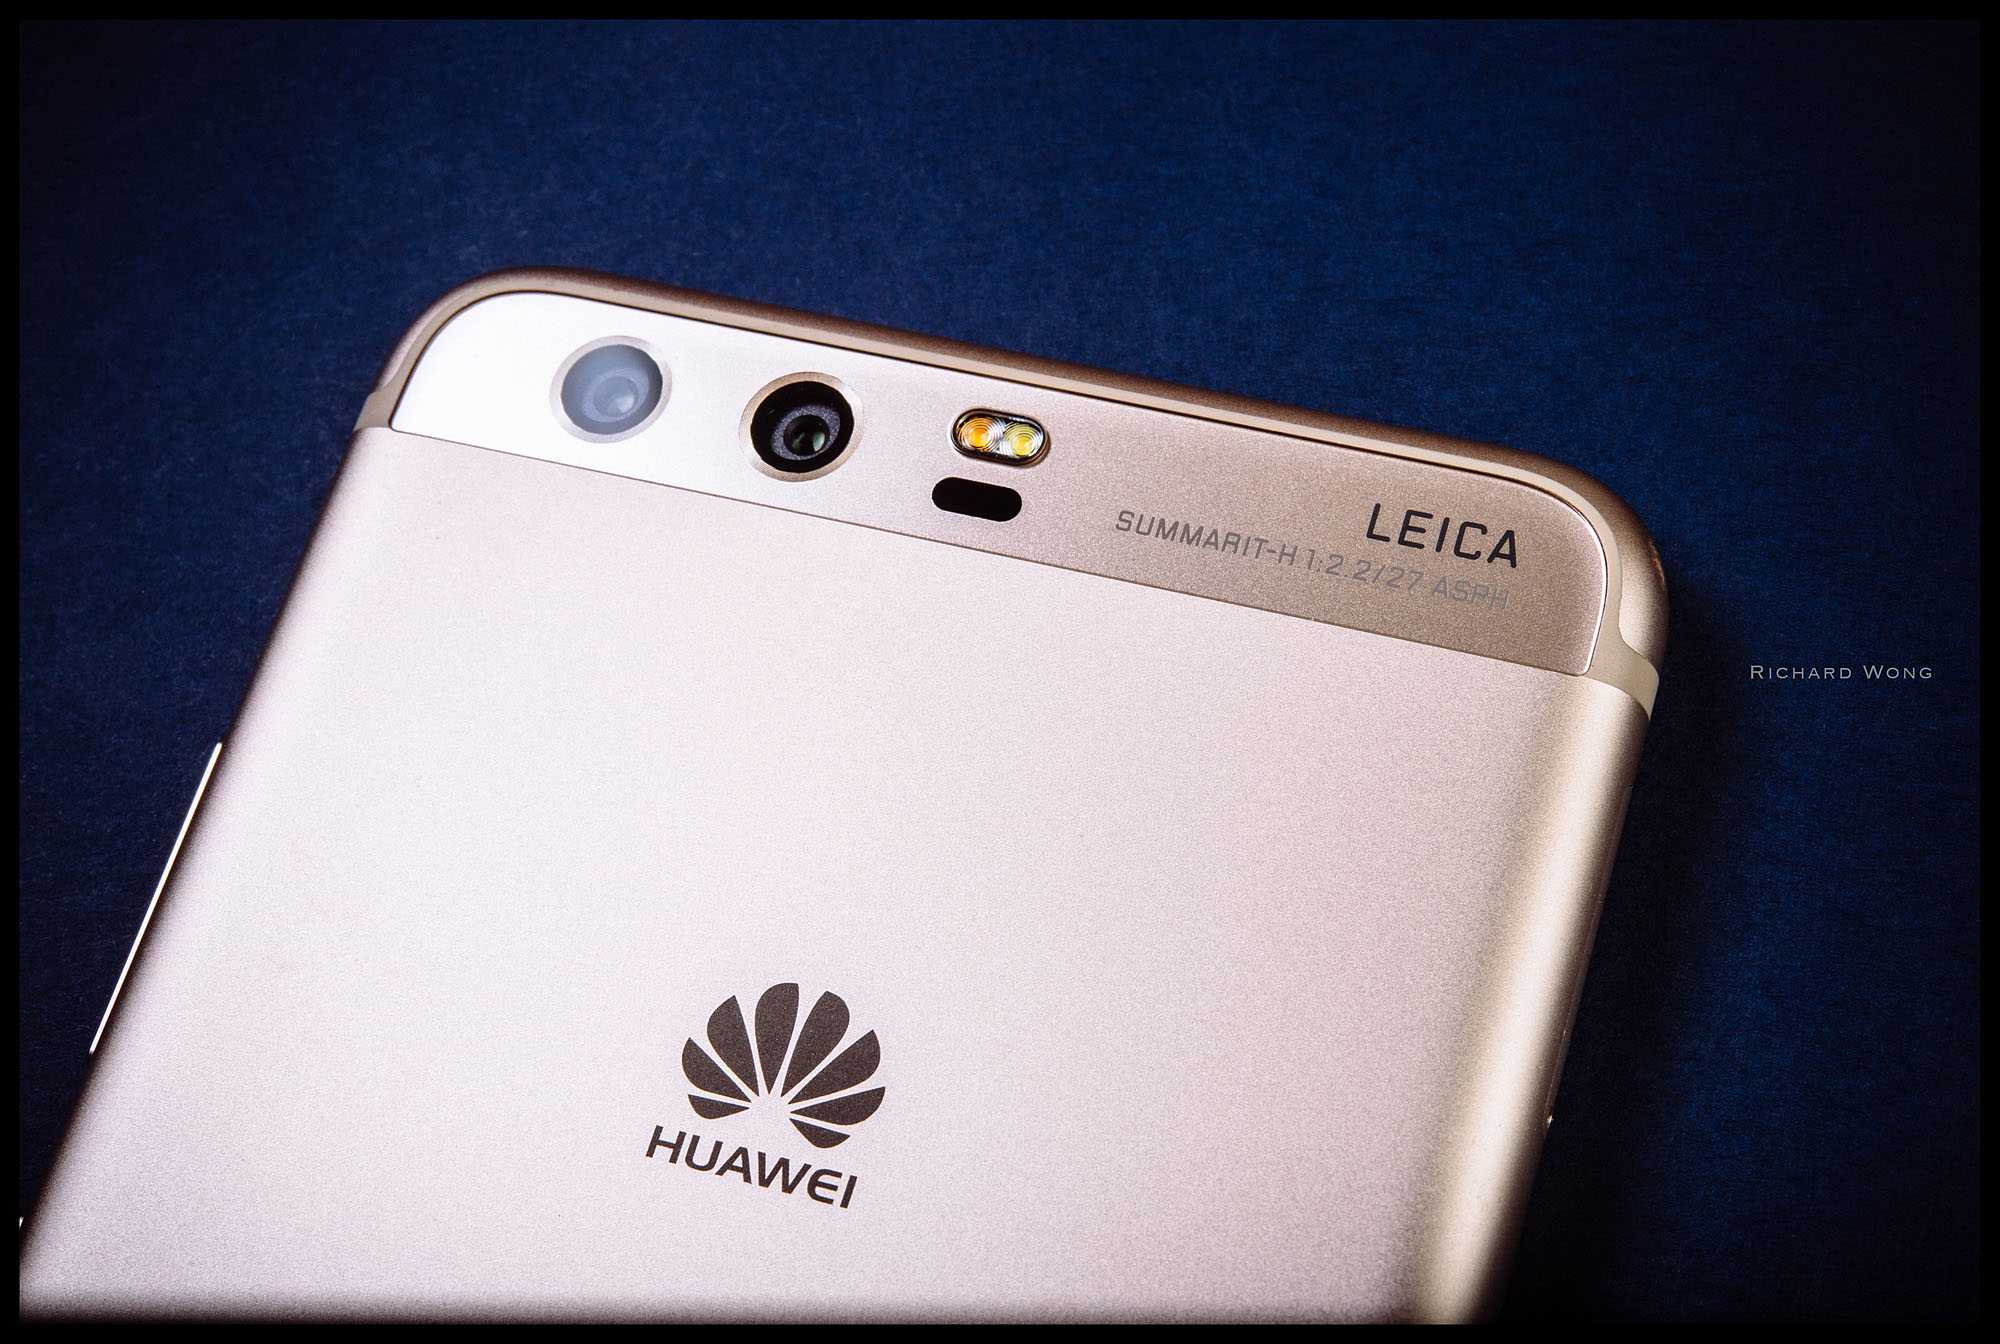 Huawei перестает сотрудничать с Leica Именно с ней они делали лучшие в мире камеры Теперь немецкий бренд может начать сотрудничать с Xiaomi или другими производителями Хотя, судя по всему, в серии P50 сотрудничество уже будет просто номинальным